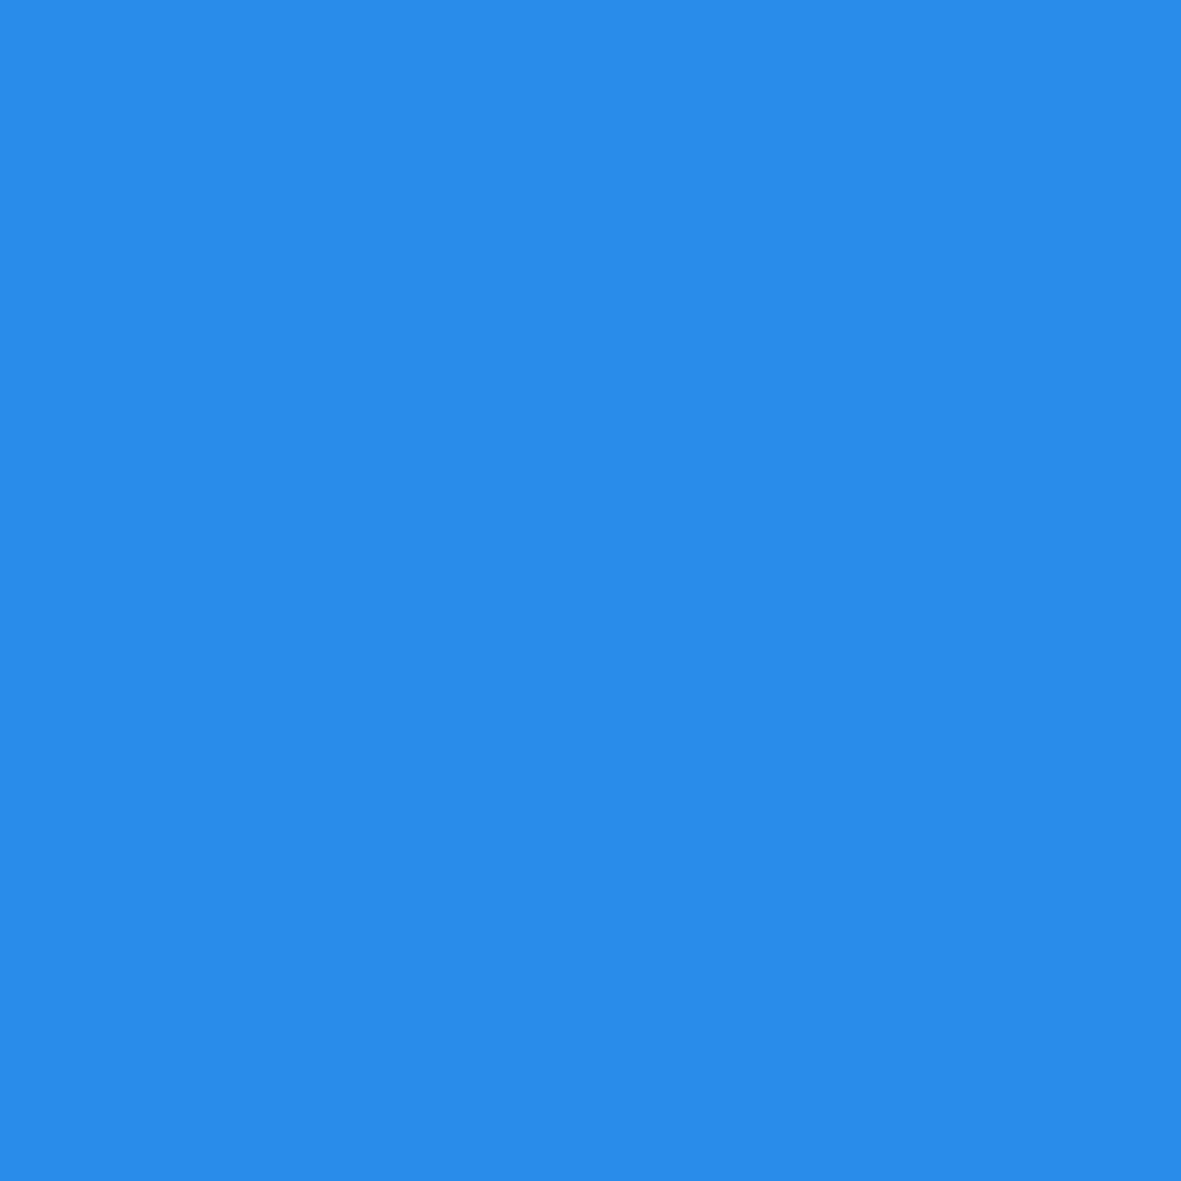 Gravotherm Folienfarbe Pastellblau für Texte, Logos und Muster 